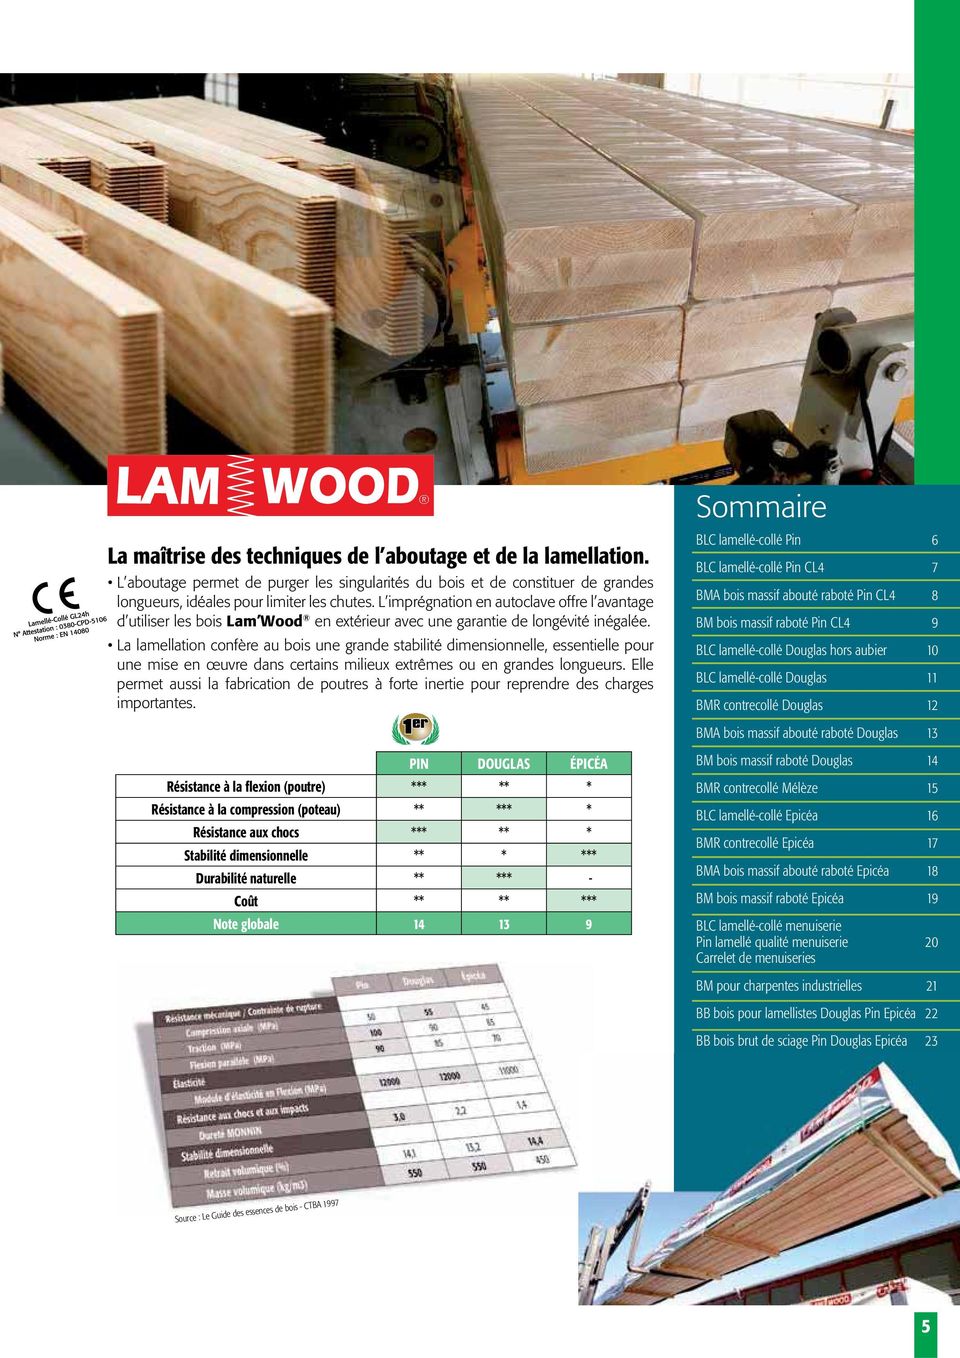 La lamellation confère au bois une grande stabilité dimensionnelle, essentielle pour une mise en œuvre dans certains milieux extrêmes ou en grandes longueurs.